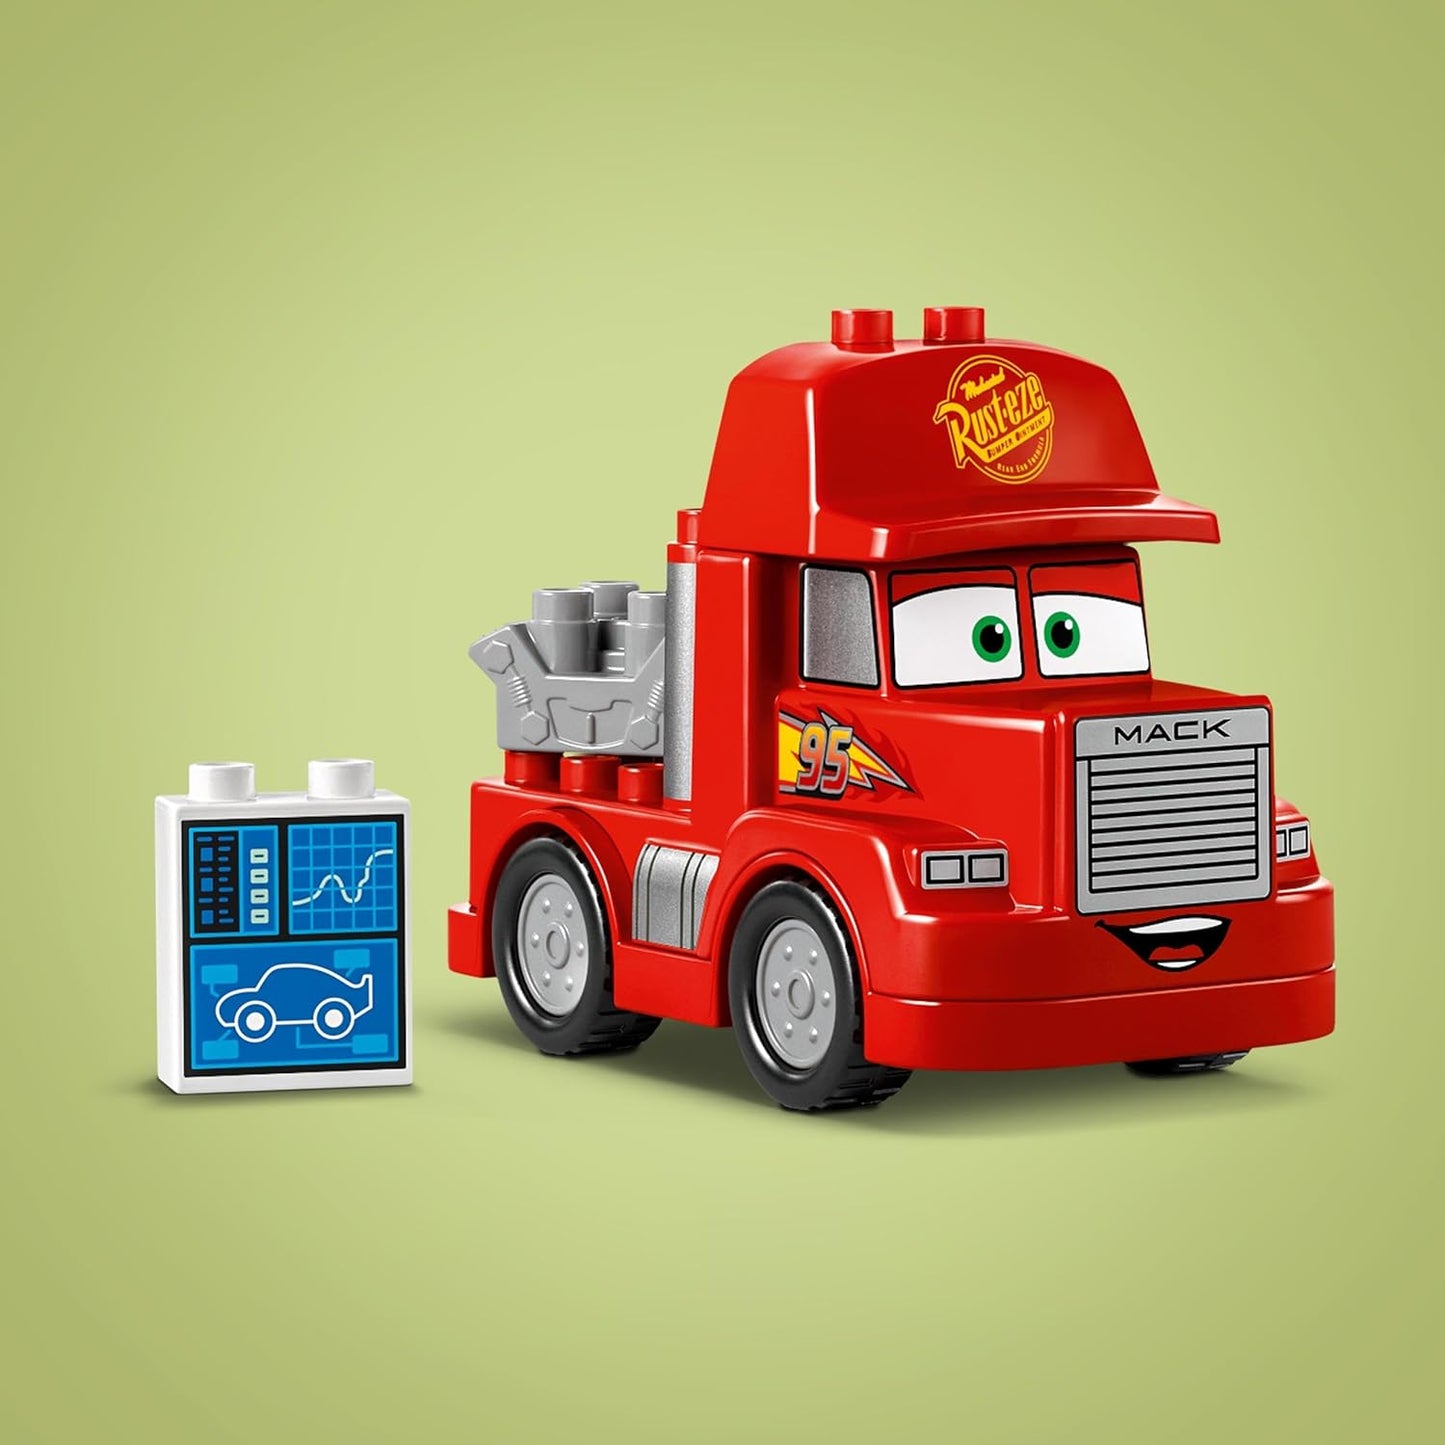 LEGO DUPLO Disney e Pixar’s Cars Mack at the Race Set, brinquedo de construção de caminhão para crianças, meninos e meninas com mais de 2 anos, Red Hauler edificável do filme, ideia de presente de aniversário 10417